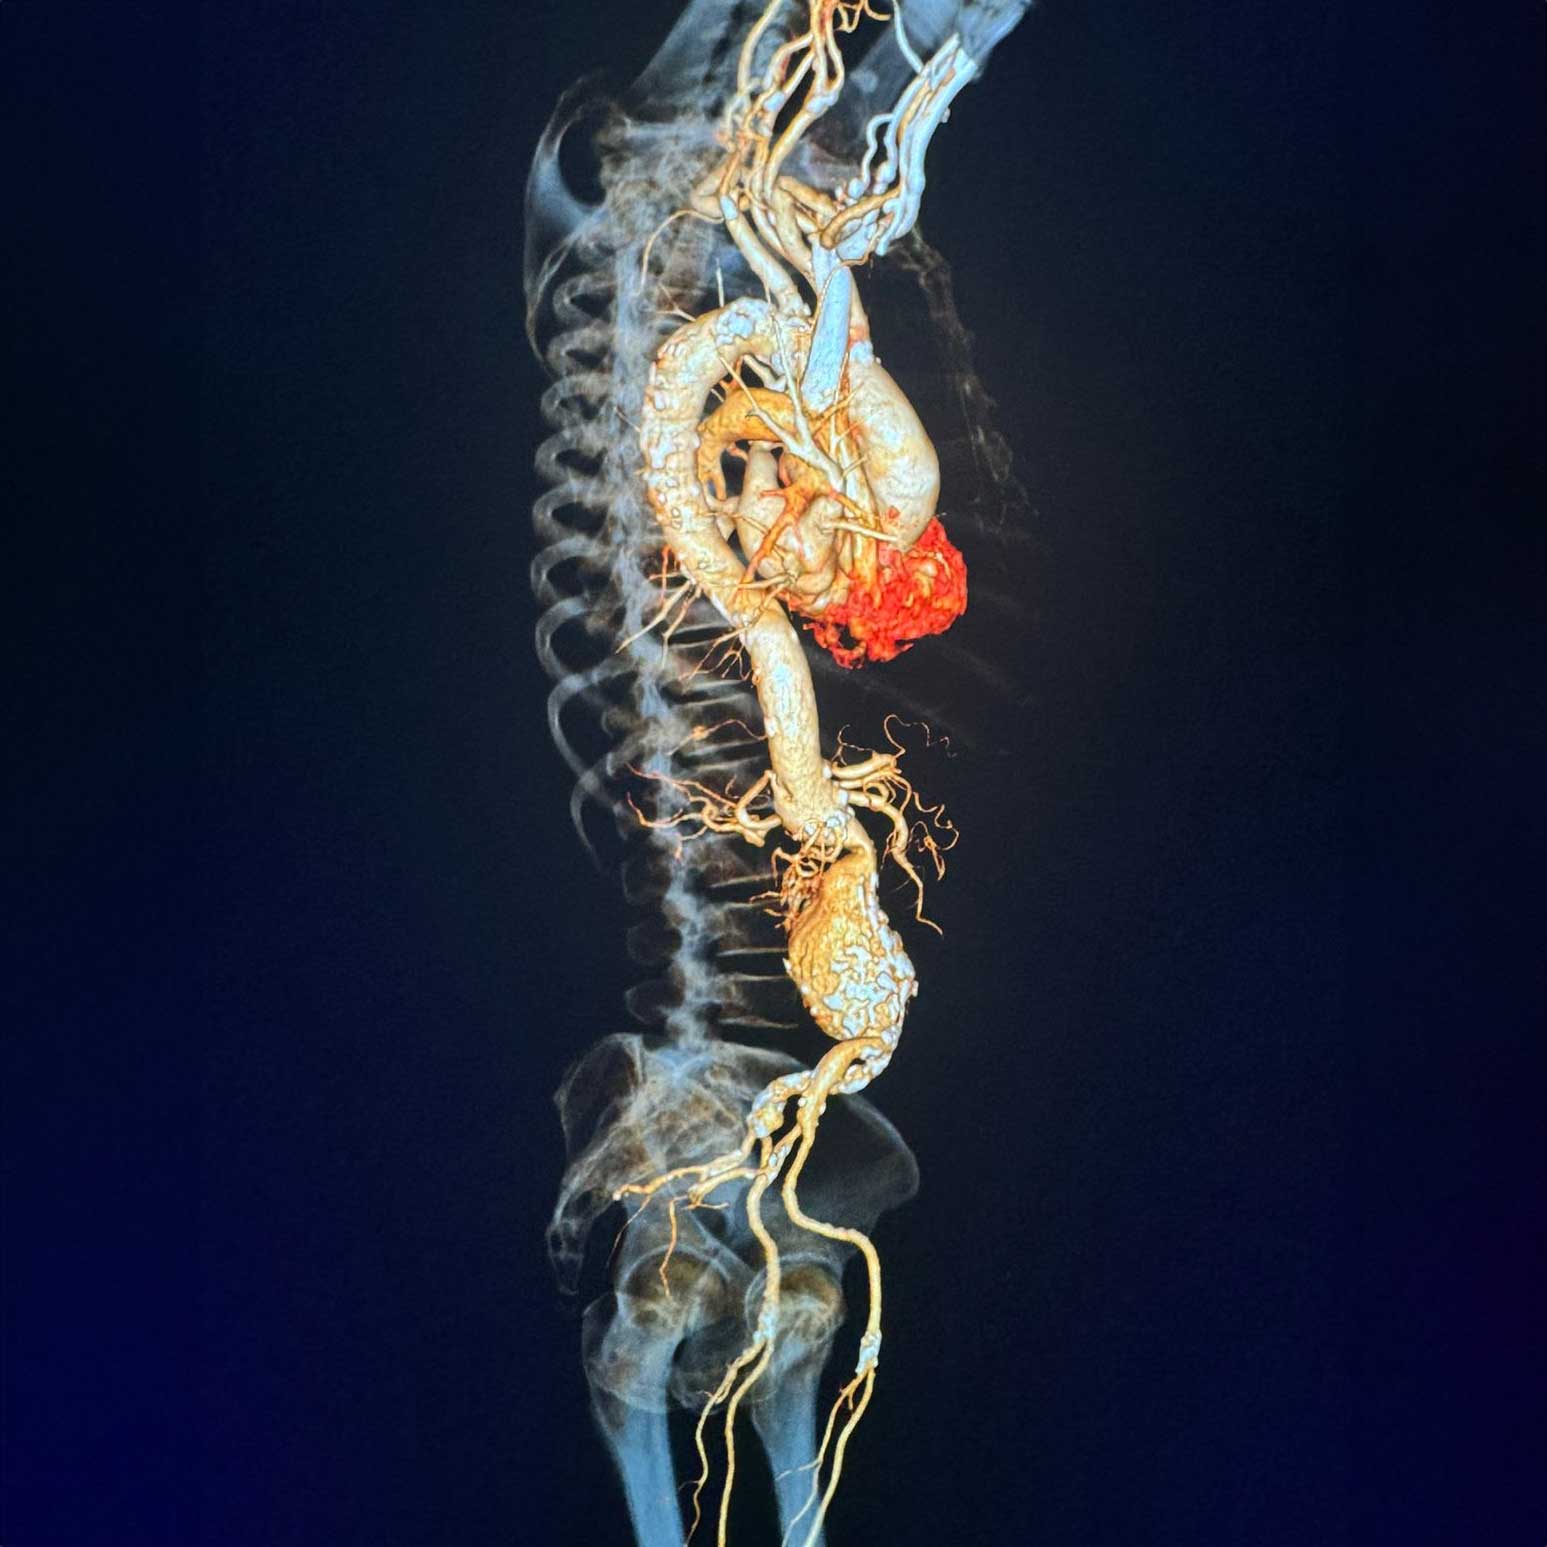 Colocación de endoprótesis en aneurisma en la aorta abdominal infrarrenal